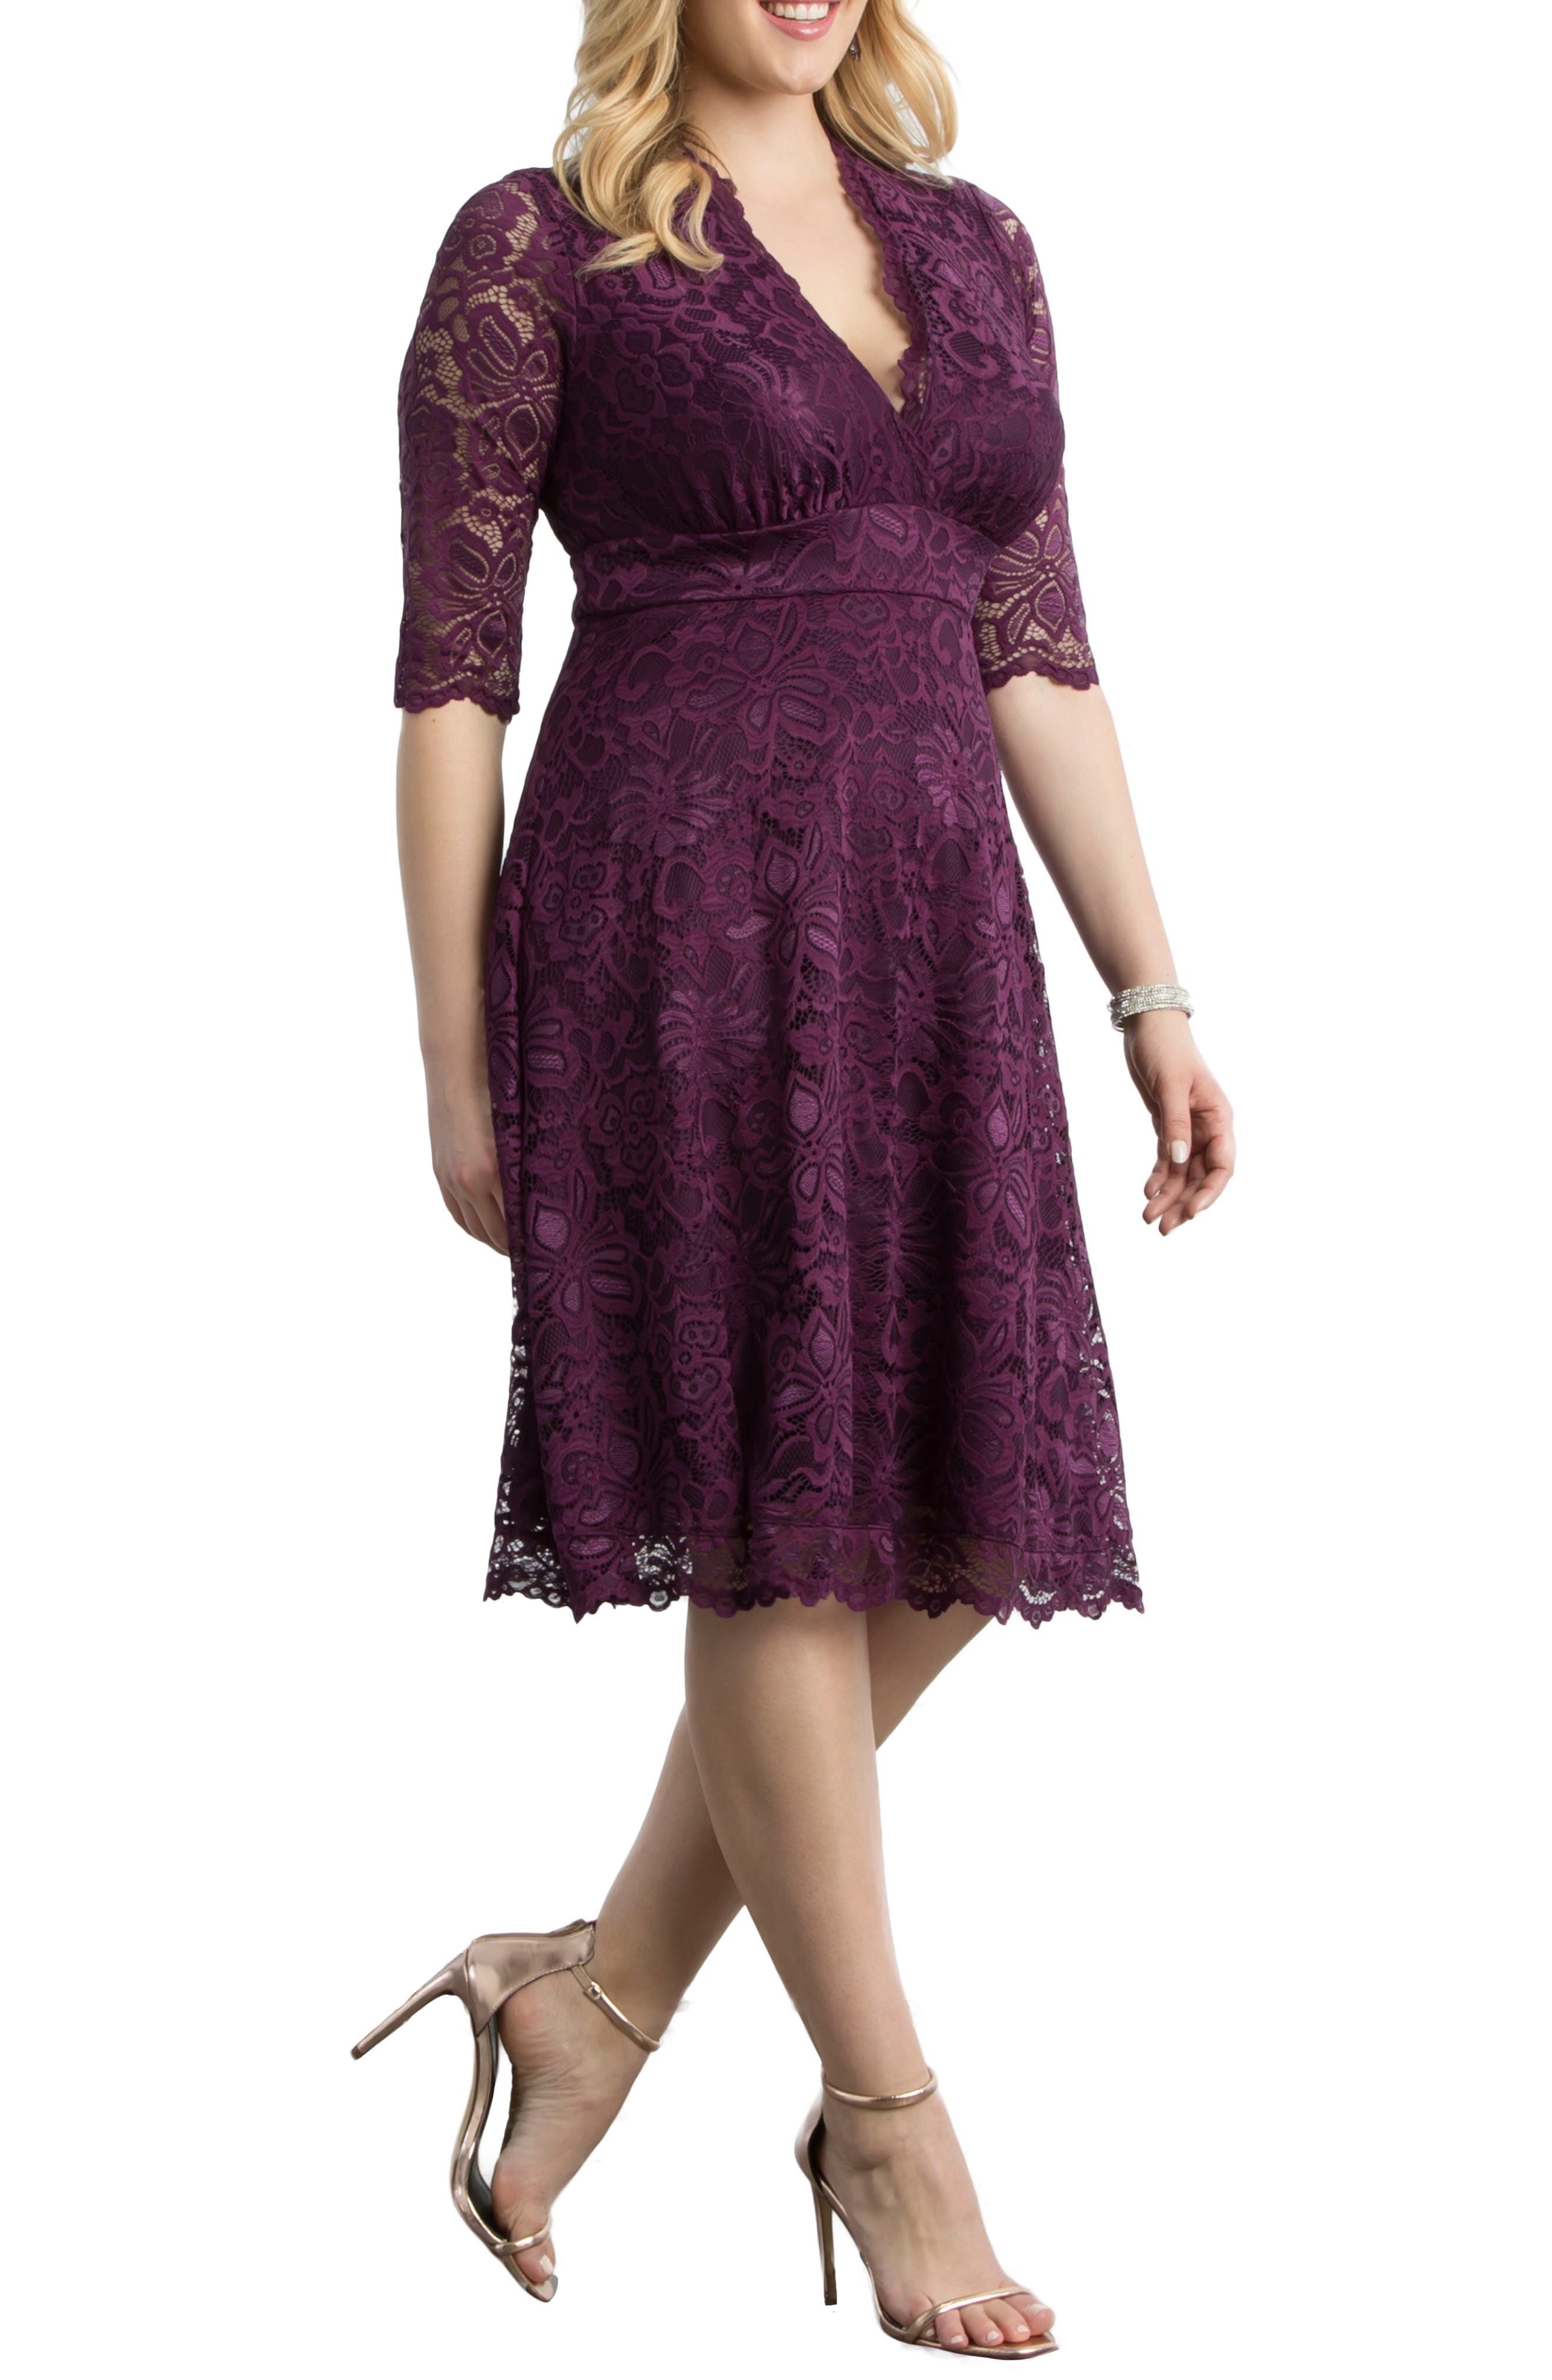 Purple Cocktail Dresses ☀ Party Dresses ...